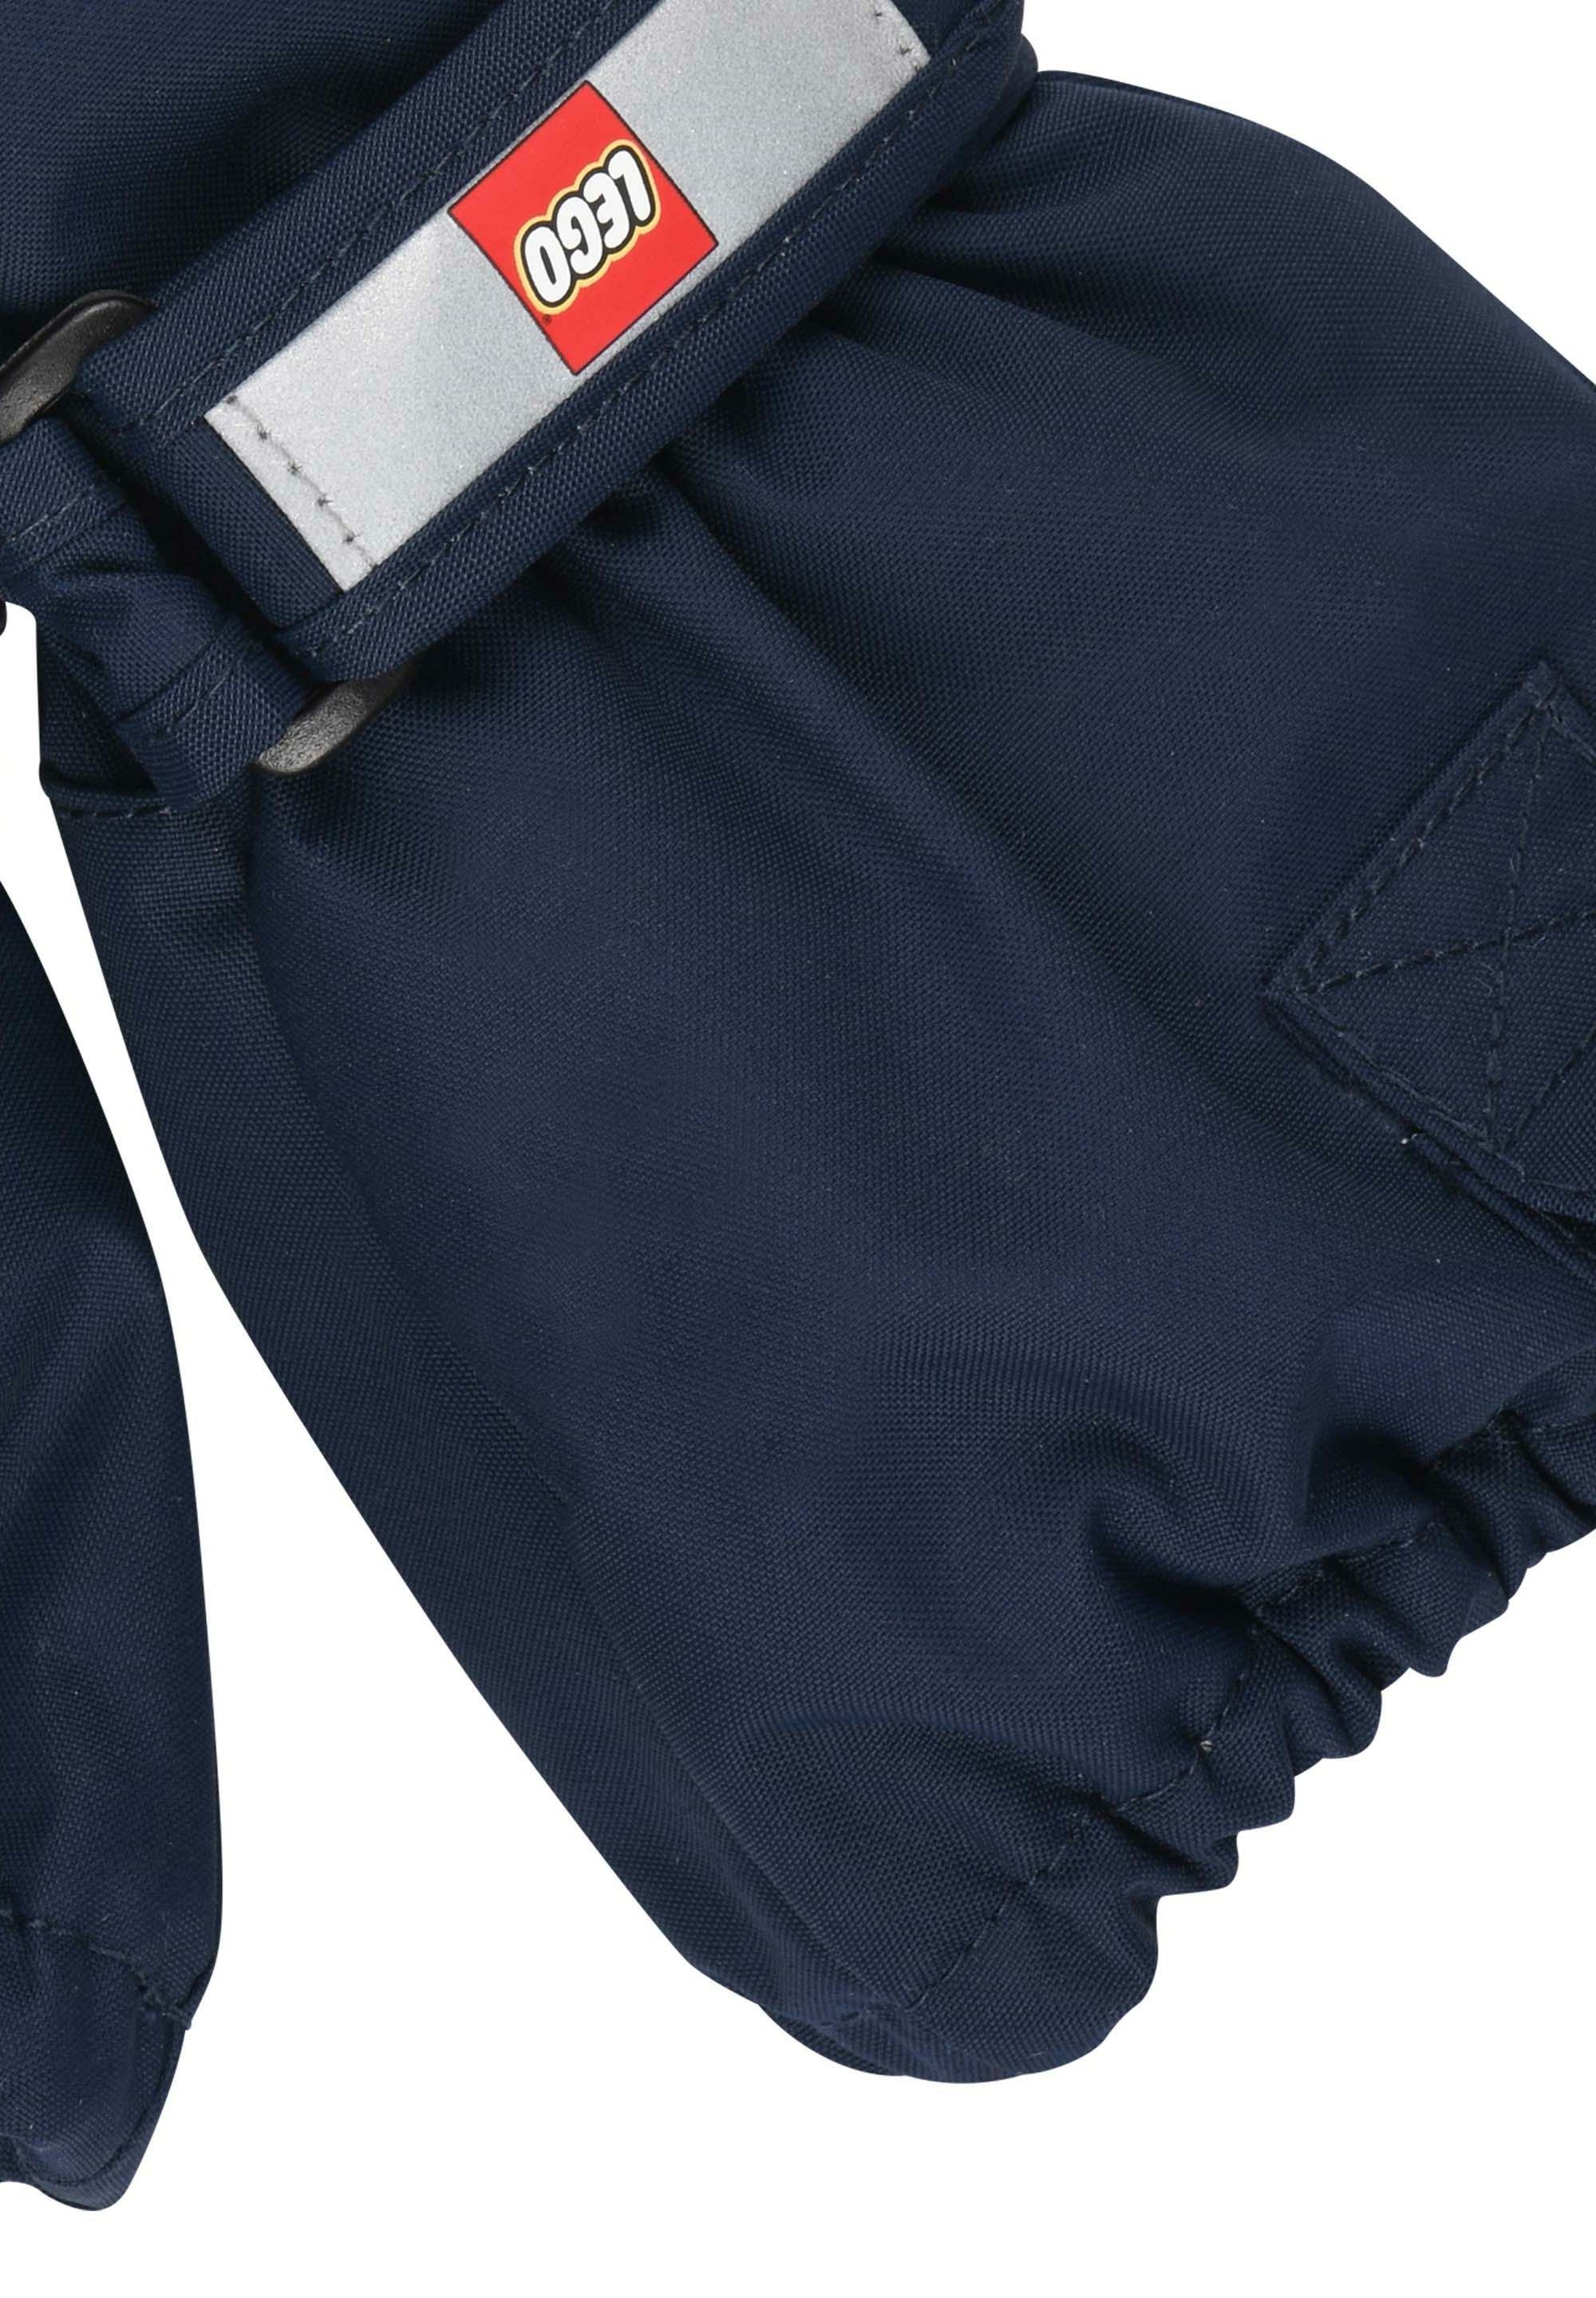 700 dark navy Skihandschuhe LEGO® Wasserdicht, LWATLIN Multisporthandschuhe Warm und Wear